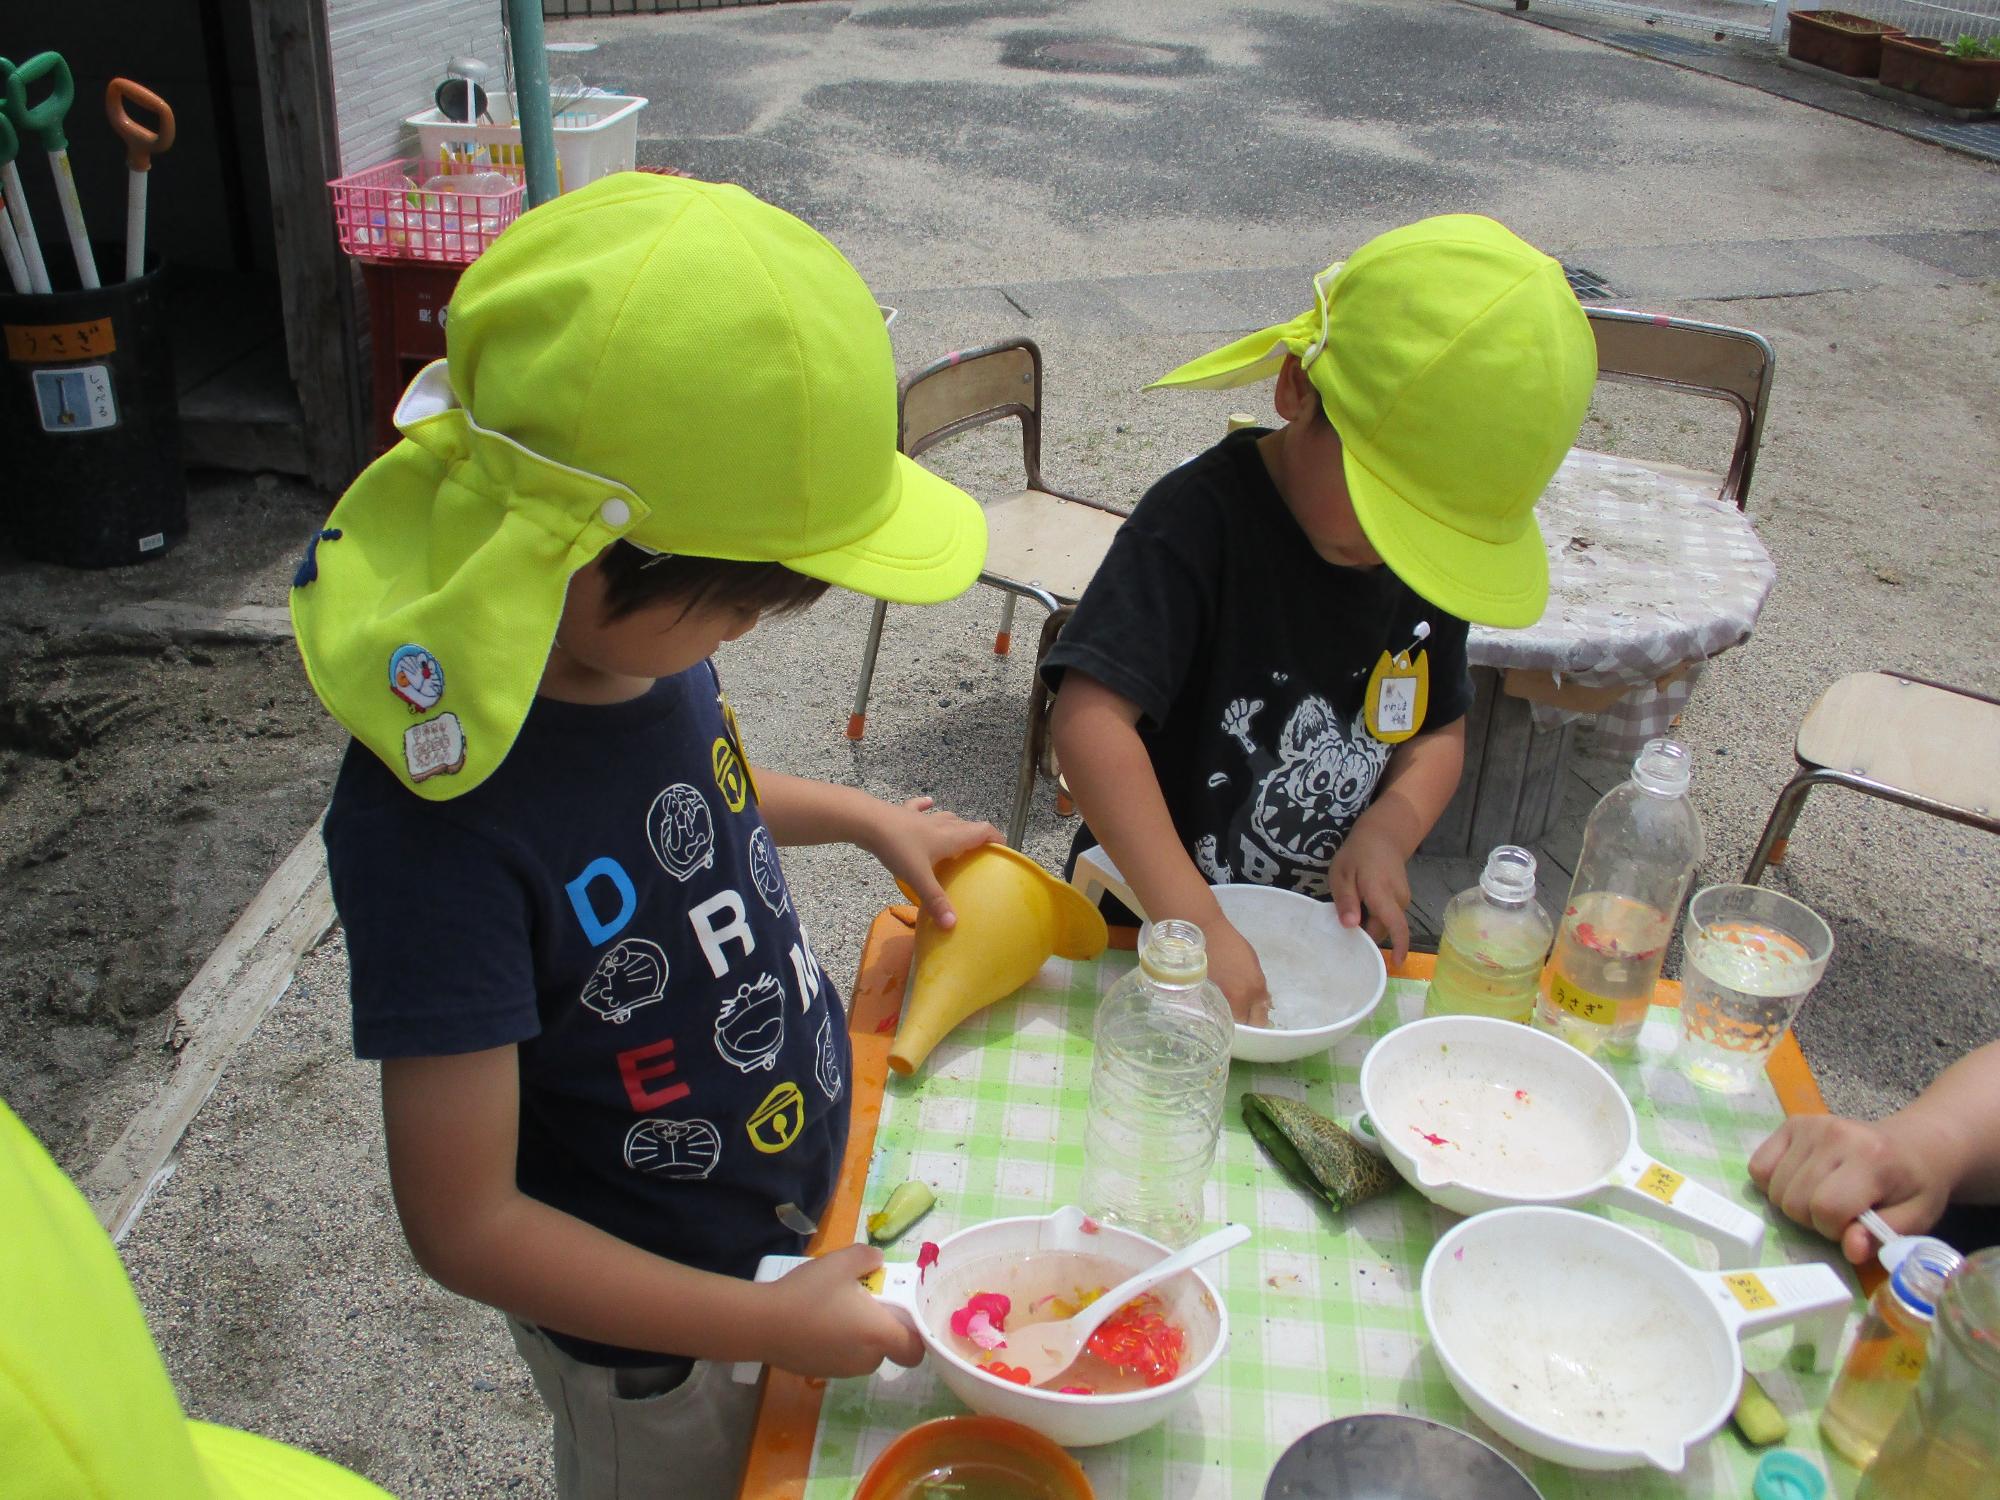 黄色の帽子をかぶった園児2人が容器に入った色水で遊んでいる写真